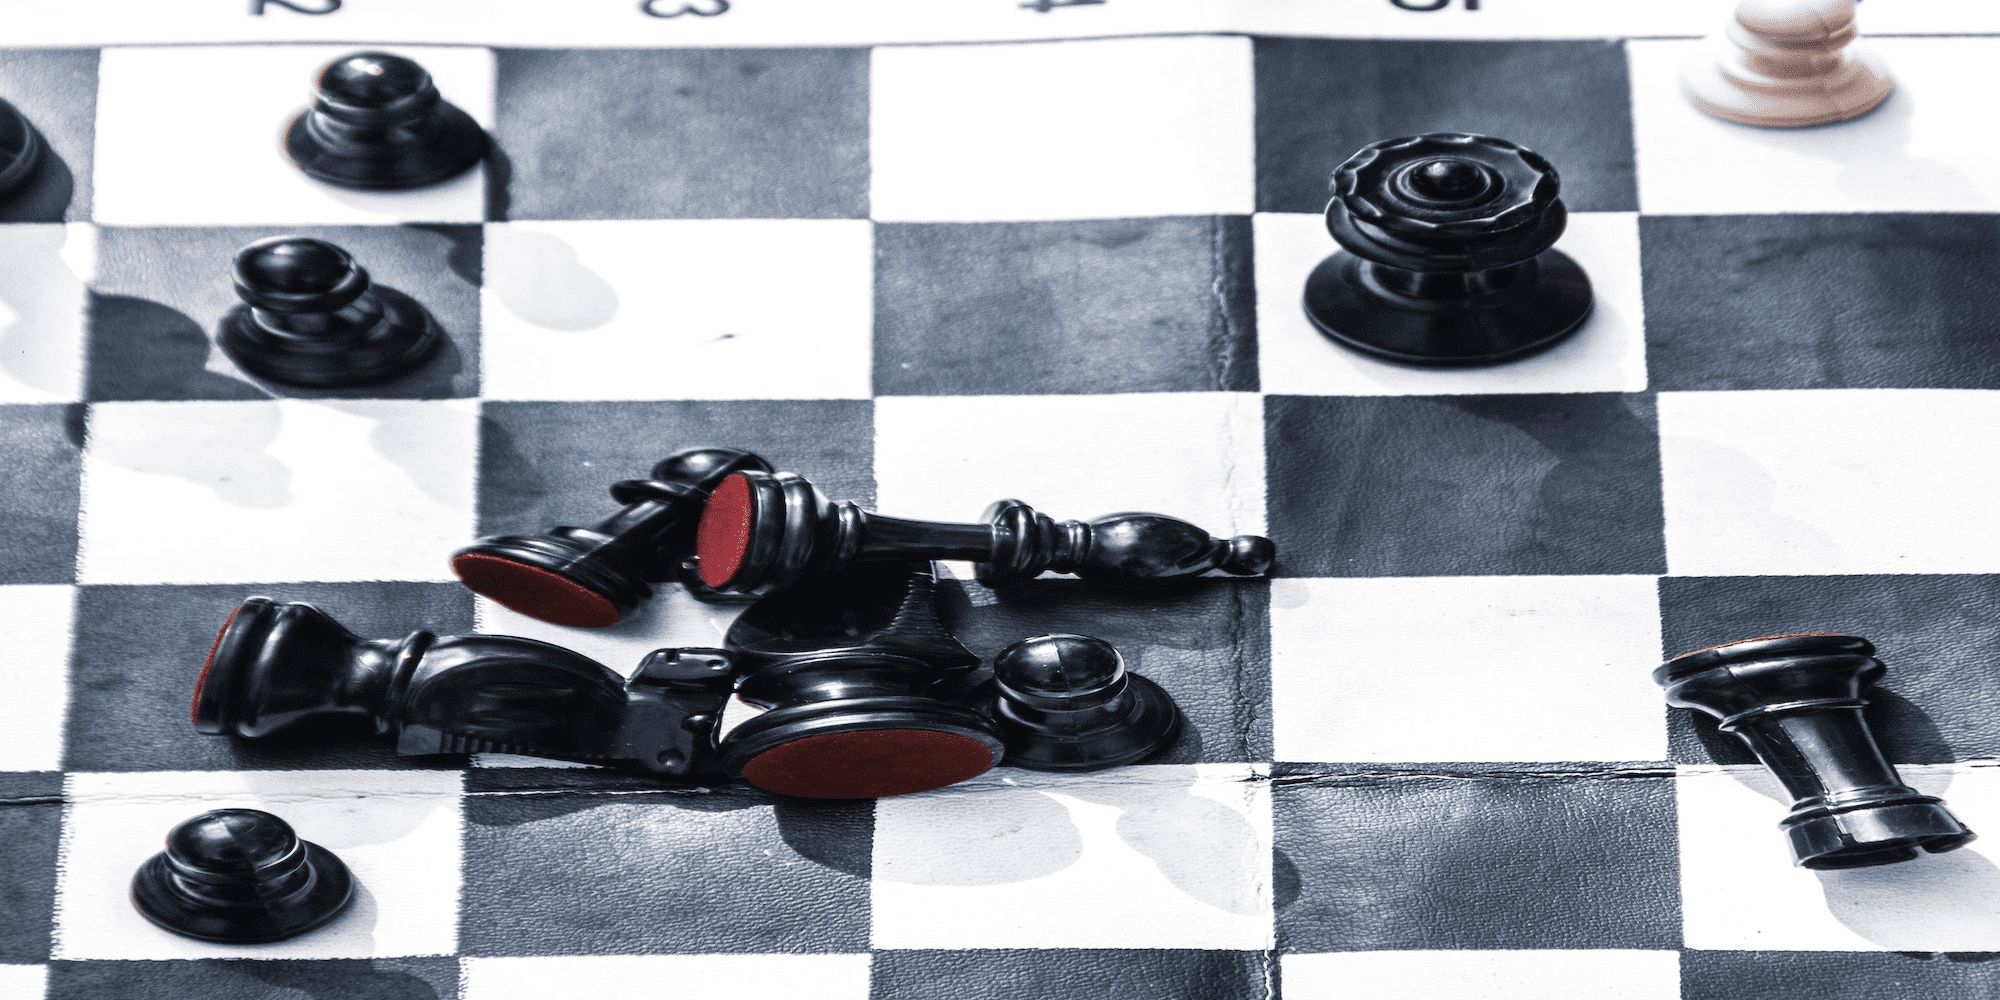 عکس کشیده از صفحه شطرنج.